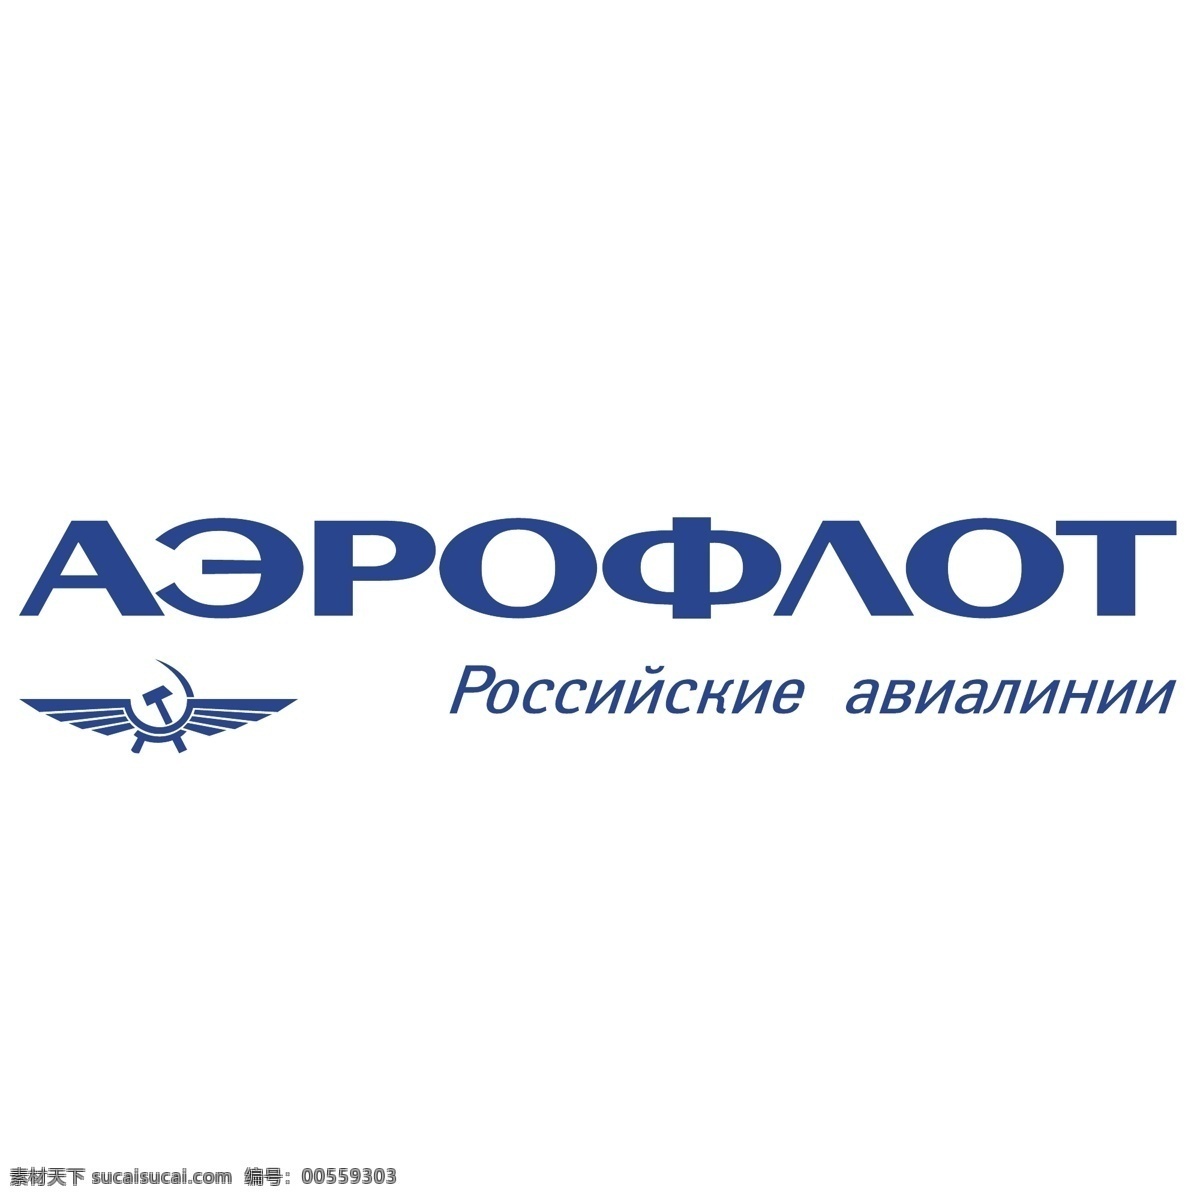 俄罗斯 国际航空公司 标识 公司 免费 品牌 品牌标识 商标 矢量标志下载 免费矢量标识 矢量 psd源文件 logo设计